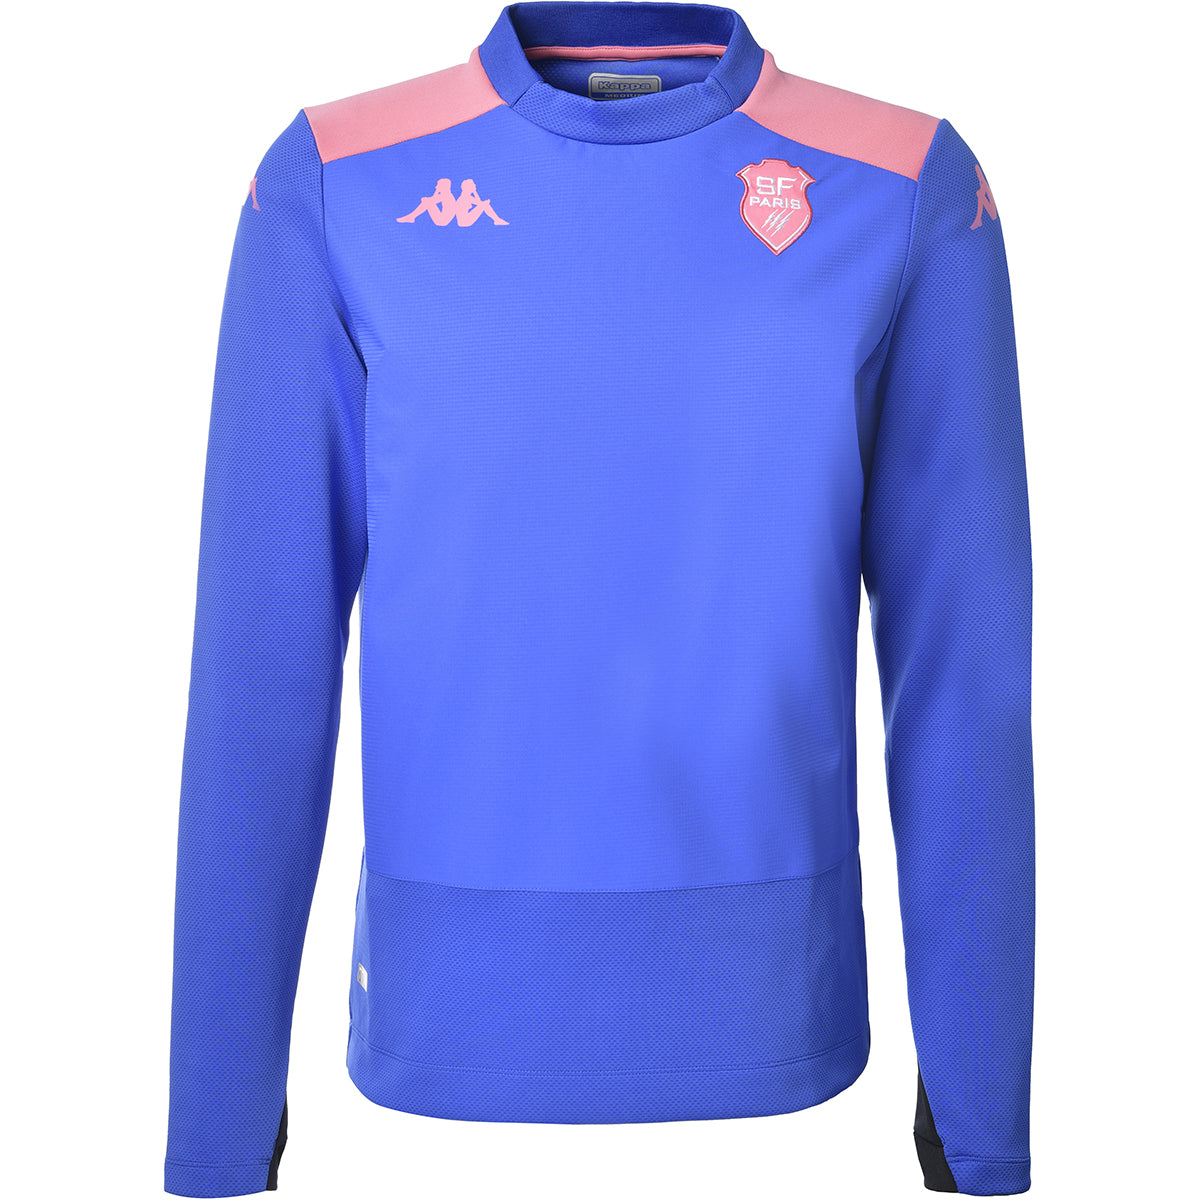 Sweatshirt Apron Pro 5 Stade Français Paris Bleu homme - image 1